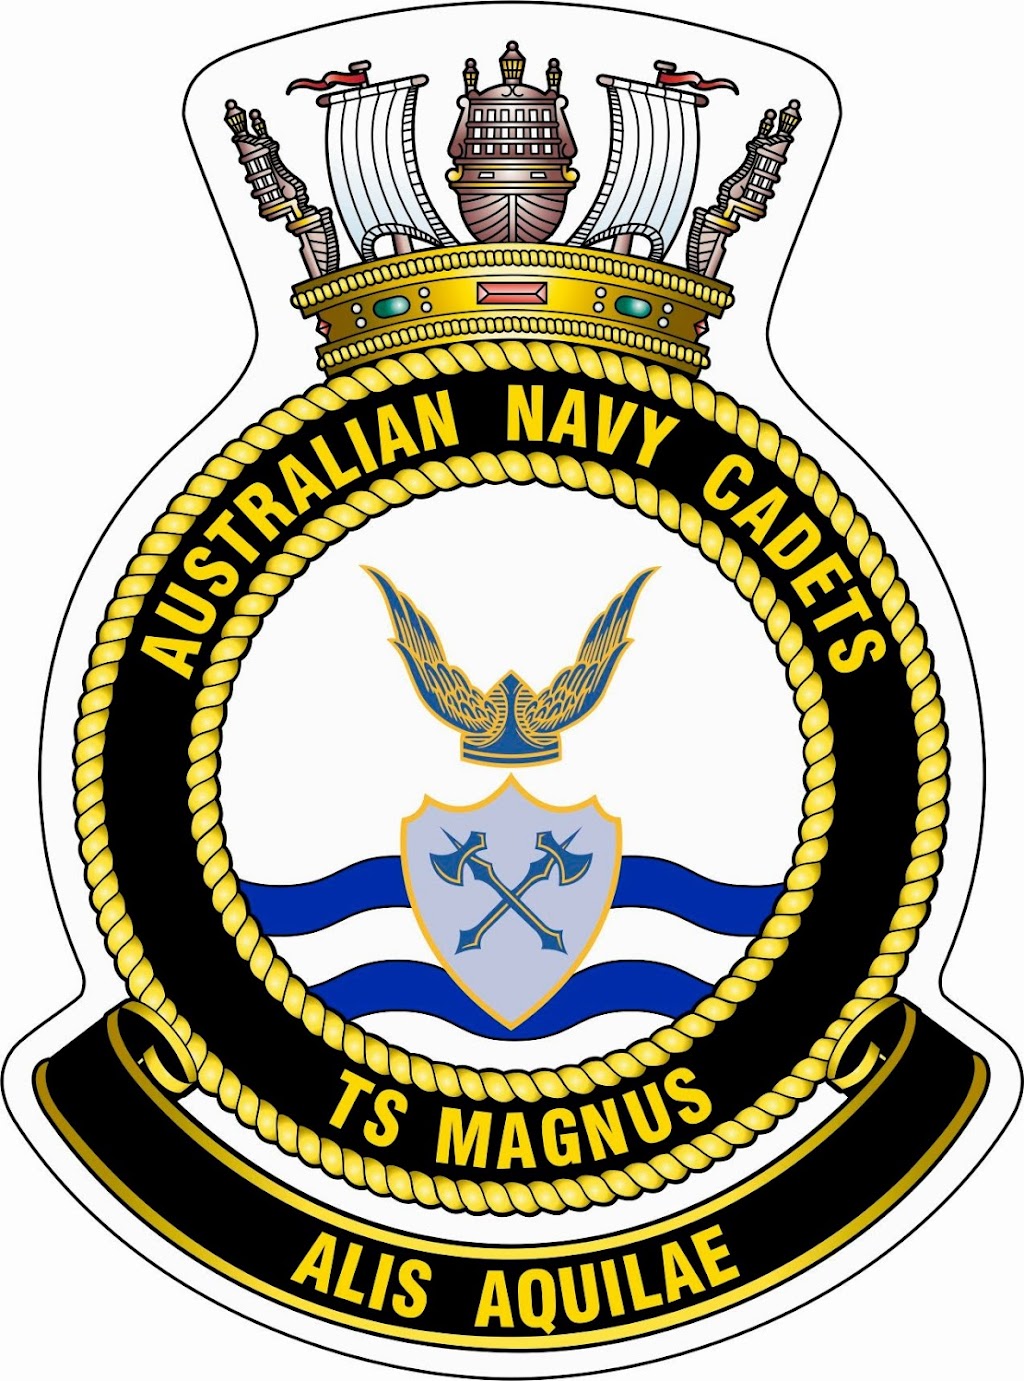 TS Magnus Australian Navy Cadets | Oaklands Parade, East Brisbane QLD 4169, Australia | Phone: 0423 033 431